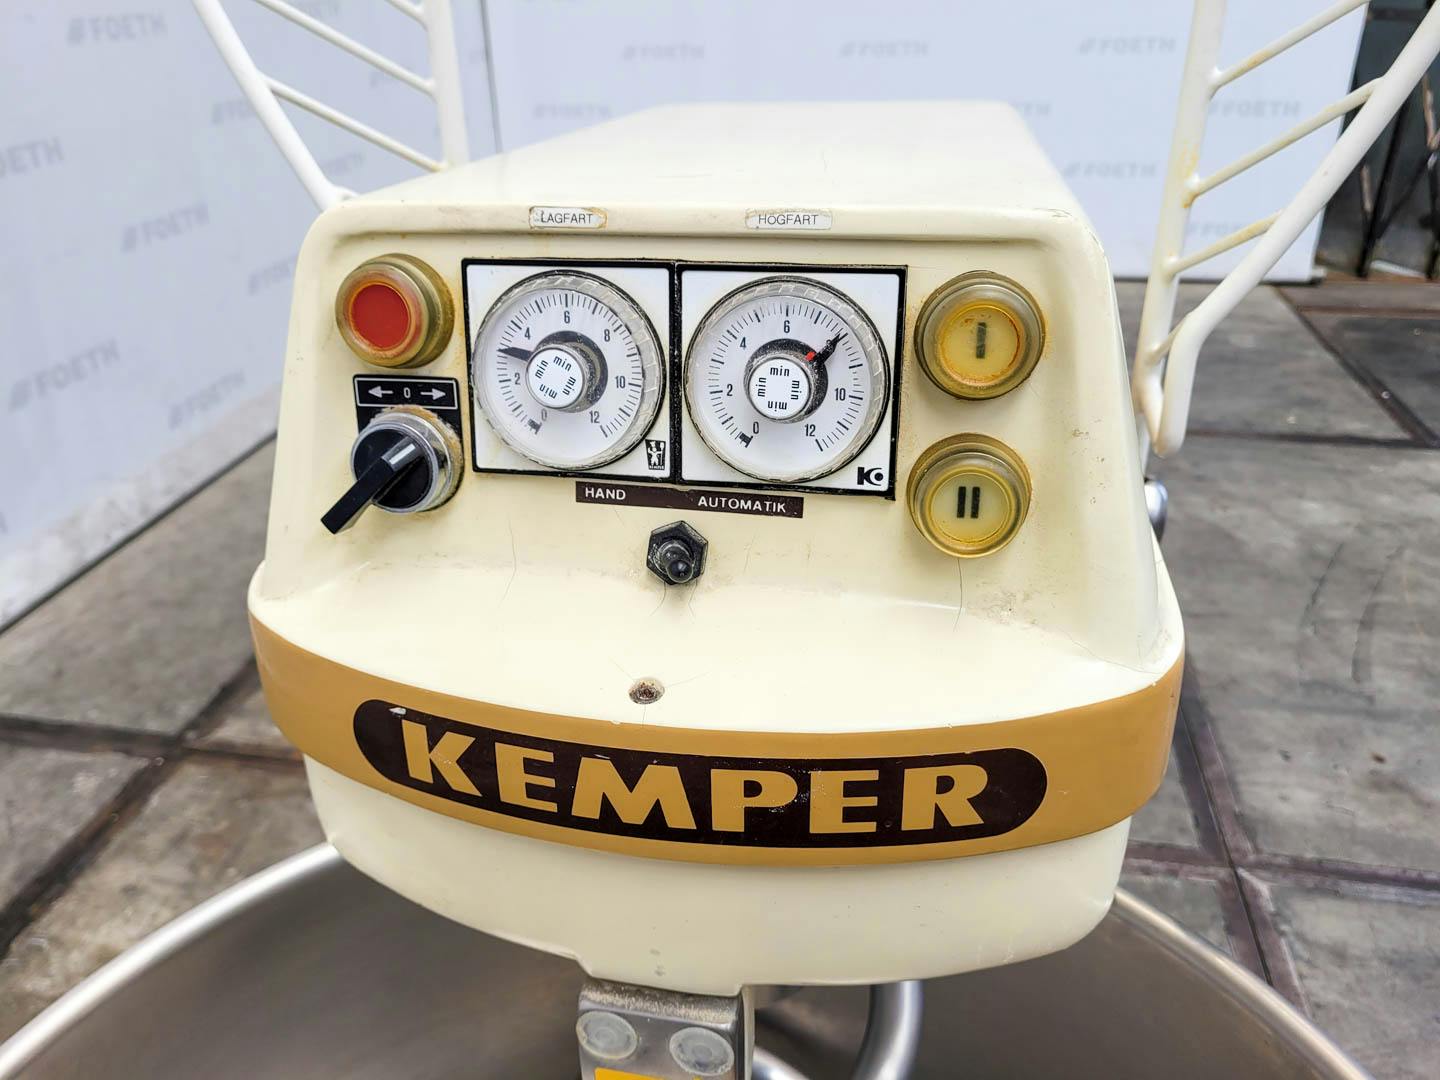 Kemper GmbH Spiral SP 50 L - Misturador planetário - image 6